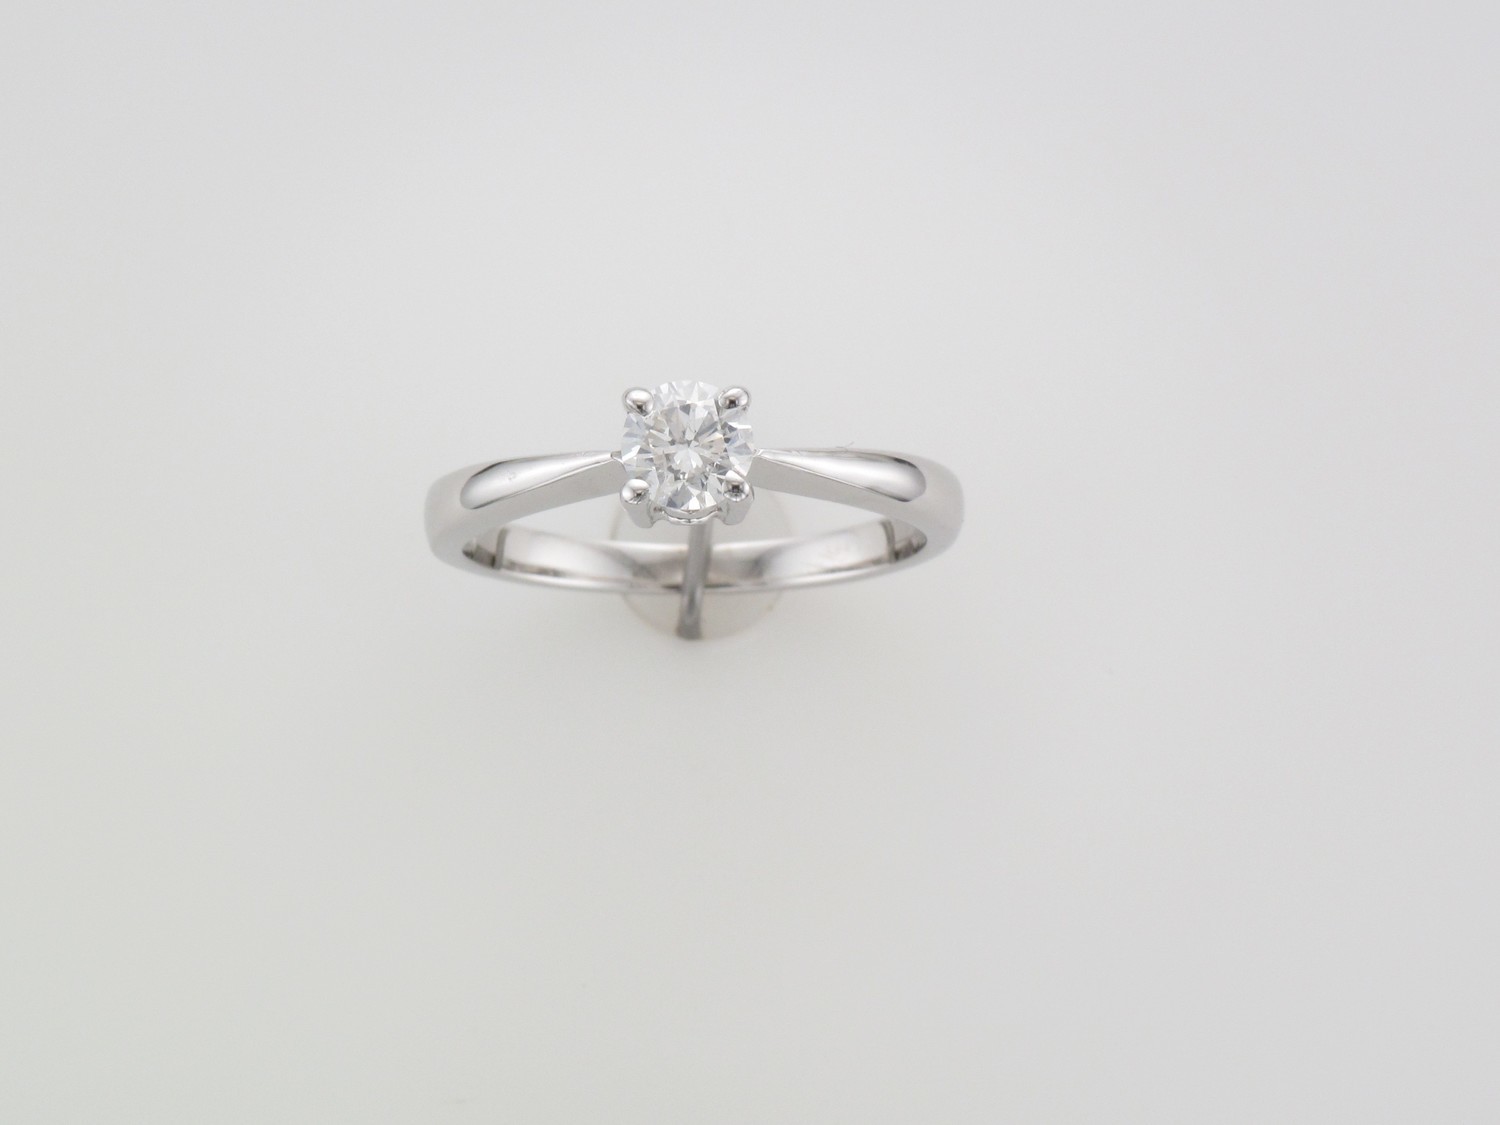 Ladies 18 carat white gold brilliant cut diamond solitaire ring